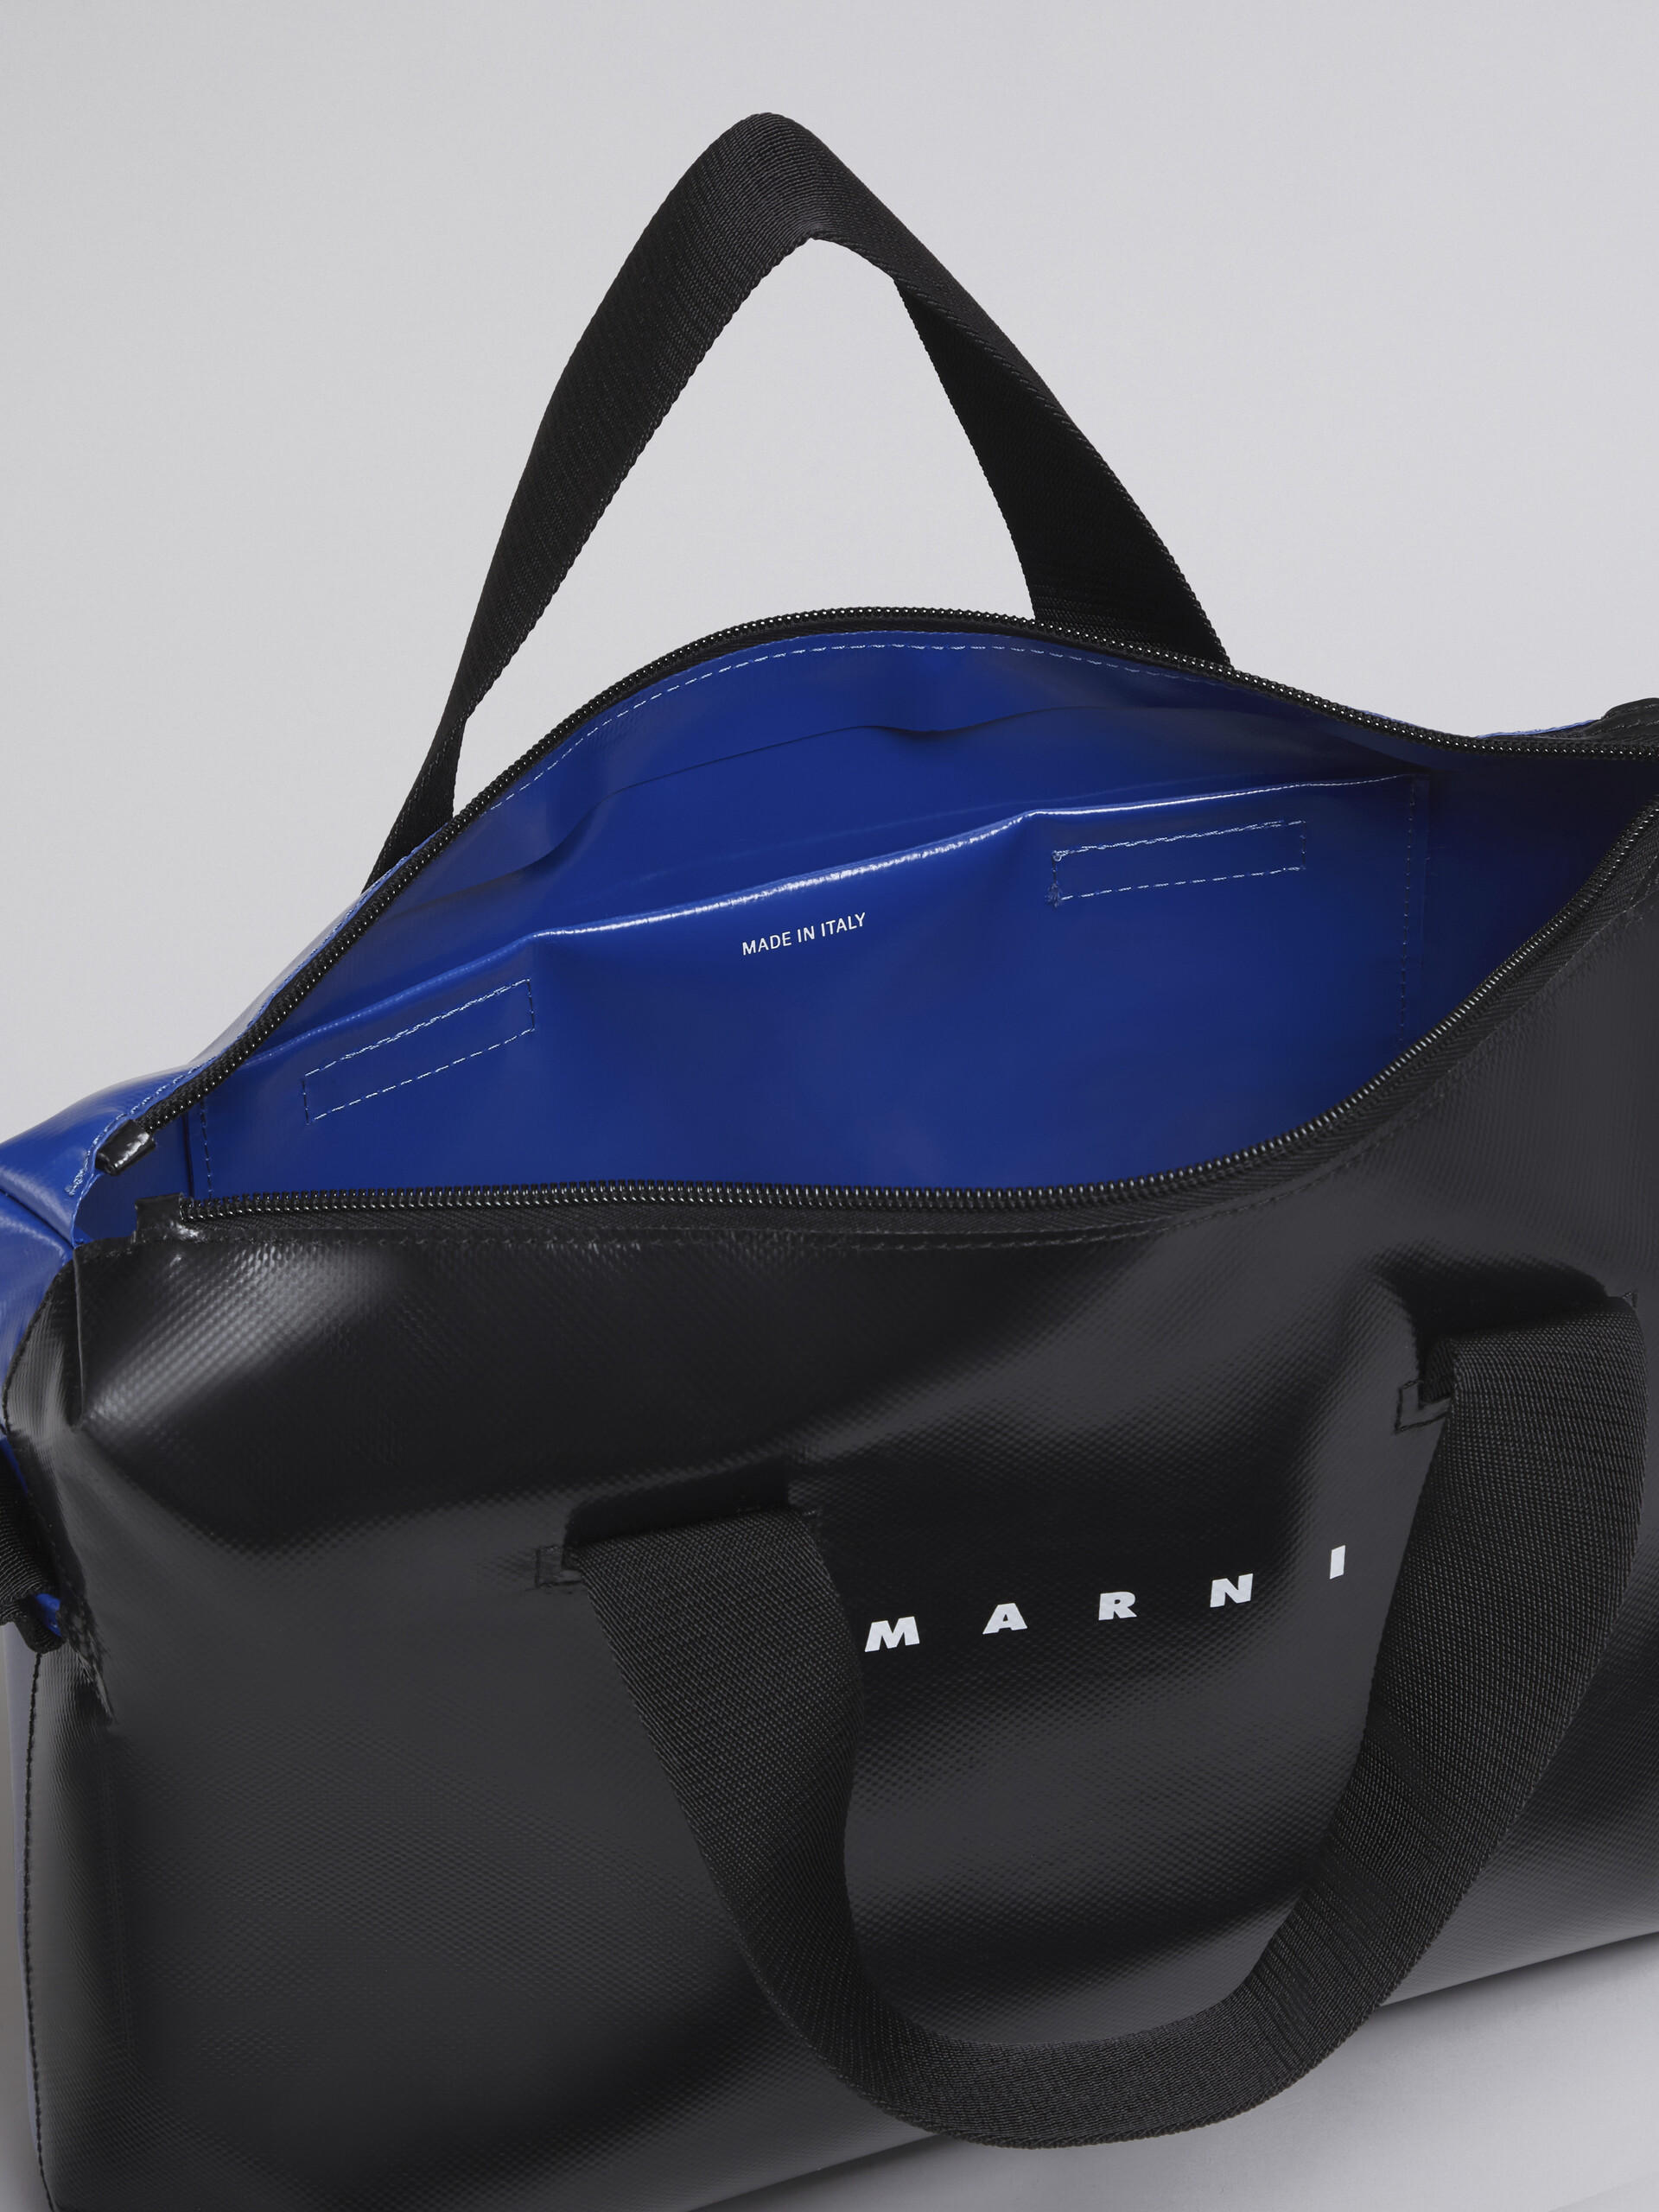 Black and blue TRIBECA bag - Handbag - Image 4